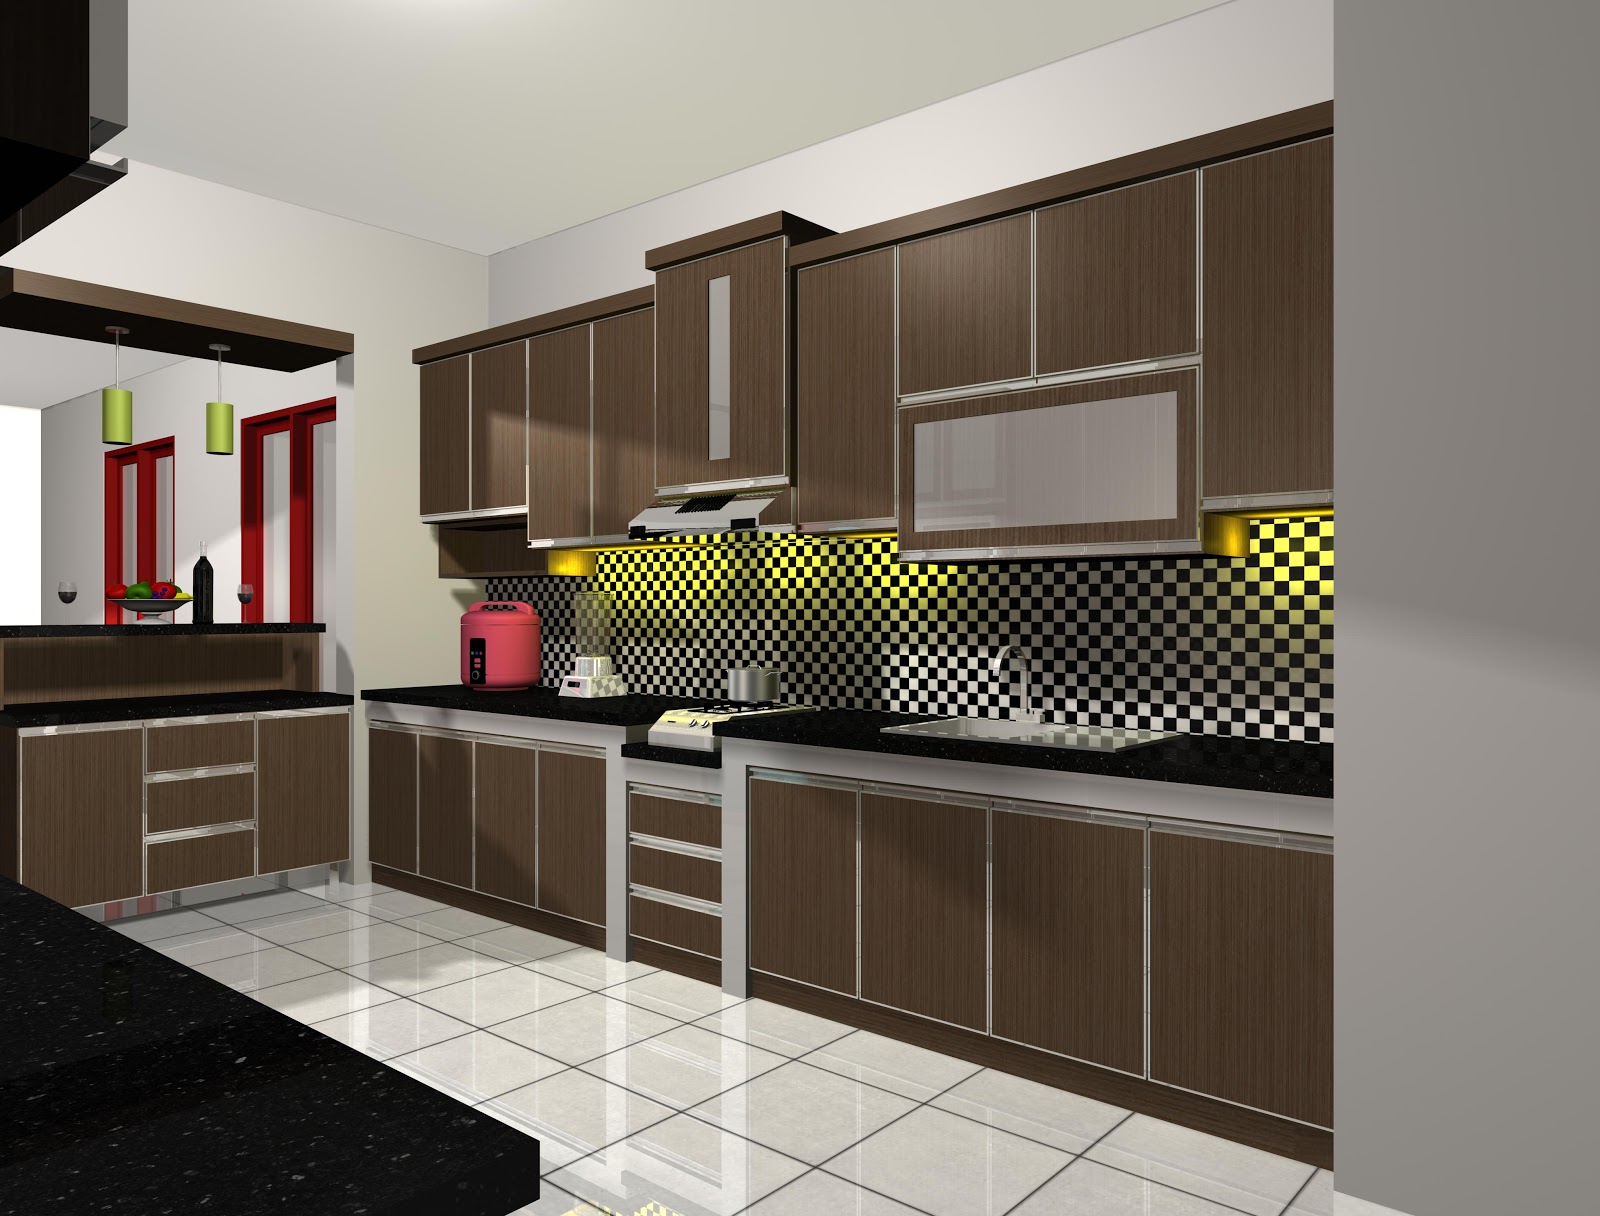 Desain Interior Dapur  Rumah  Modern Terbaru 2019